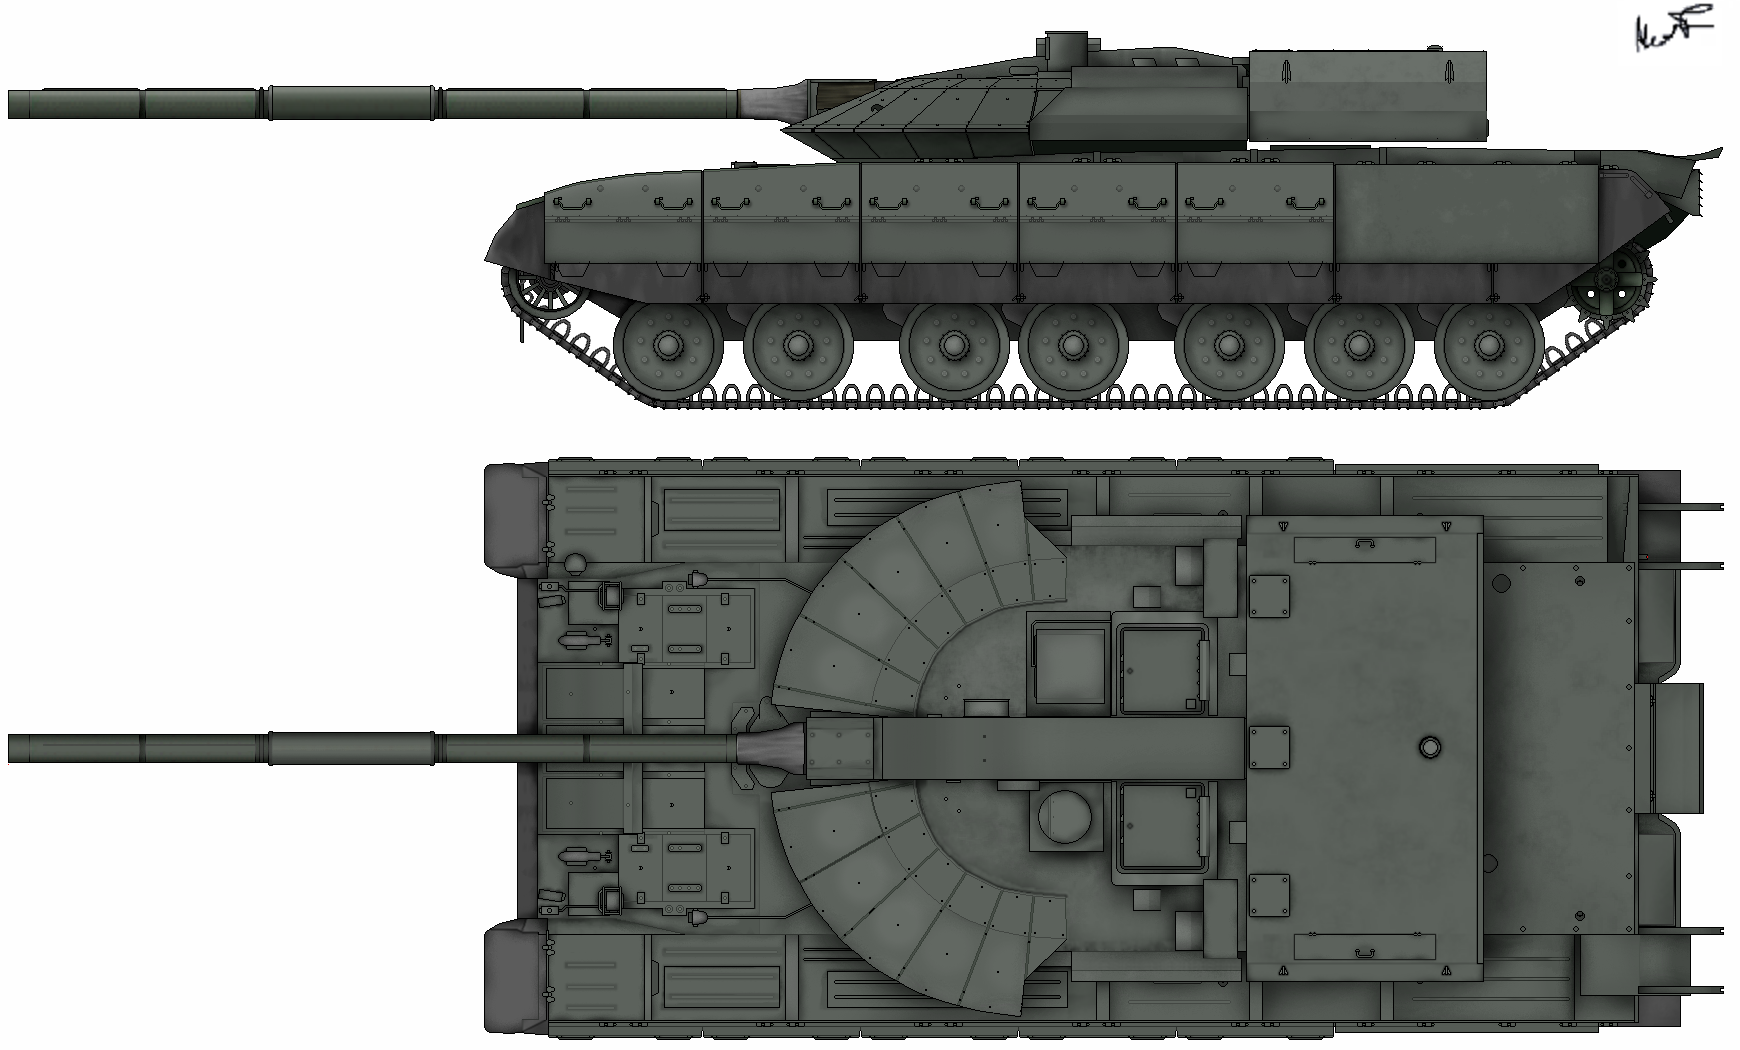 Prototipo del tanque Black Eagle (Obiekt-640)